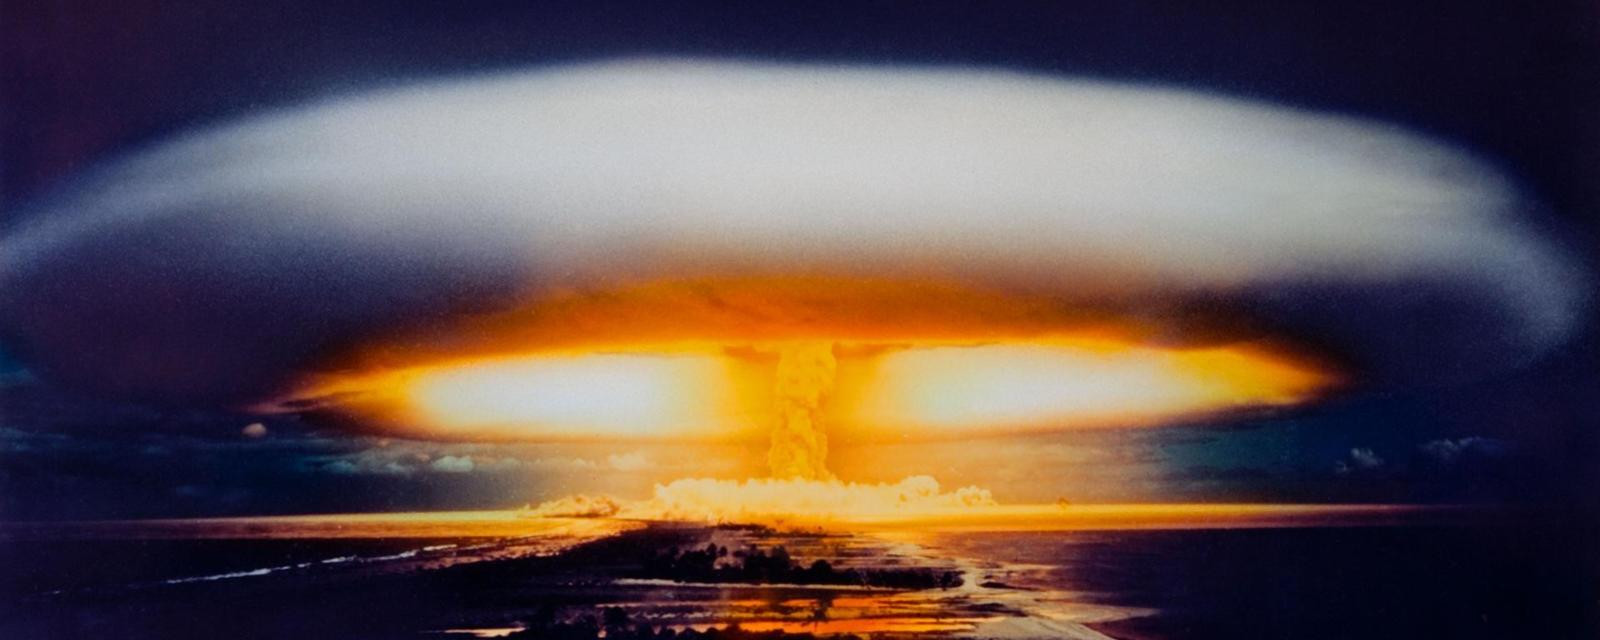 Η «βόμβα του Τσάρου» / Η ισχυρότερη ατομική βόμβα που φτιάχτηκε ποτέ